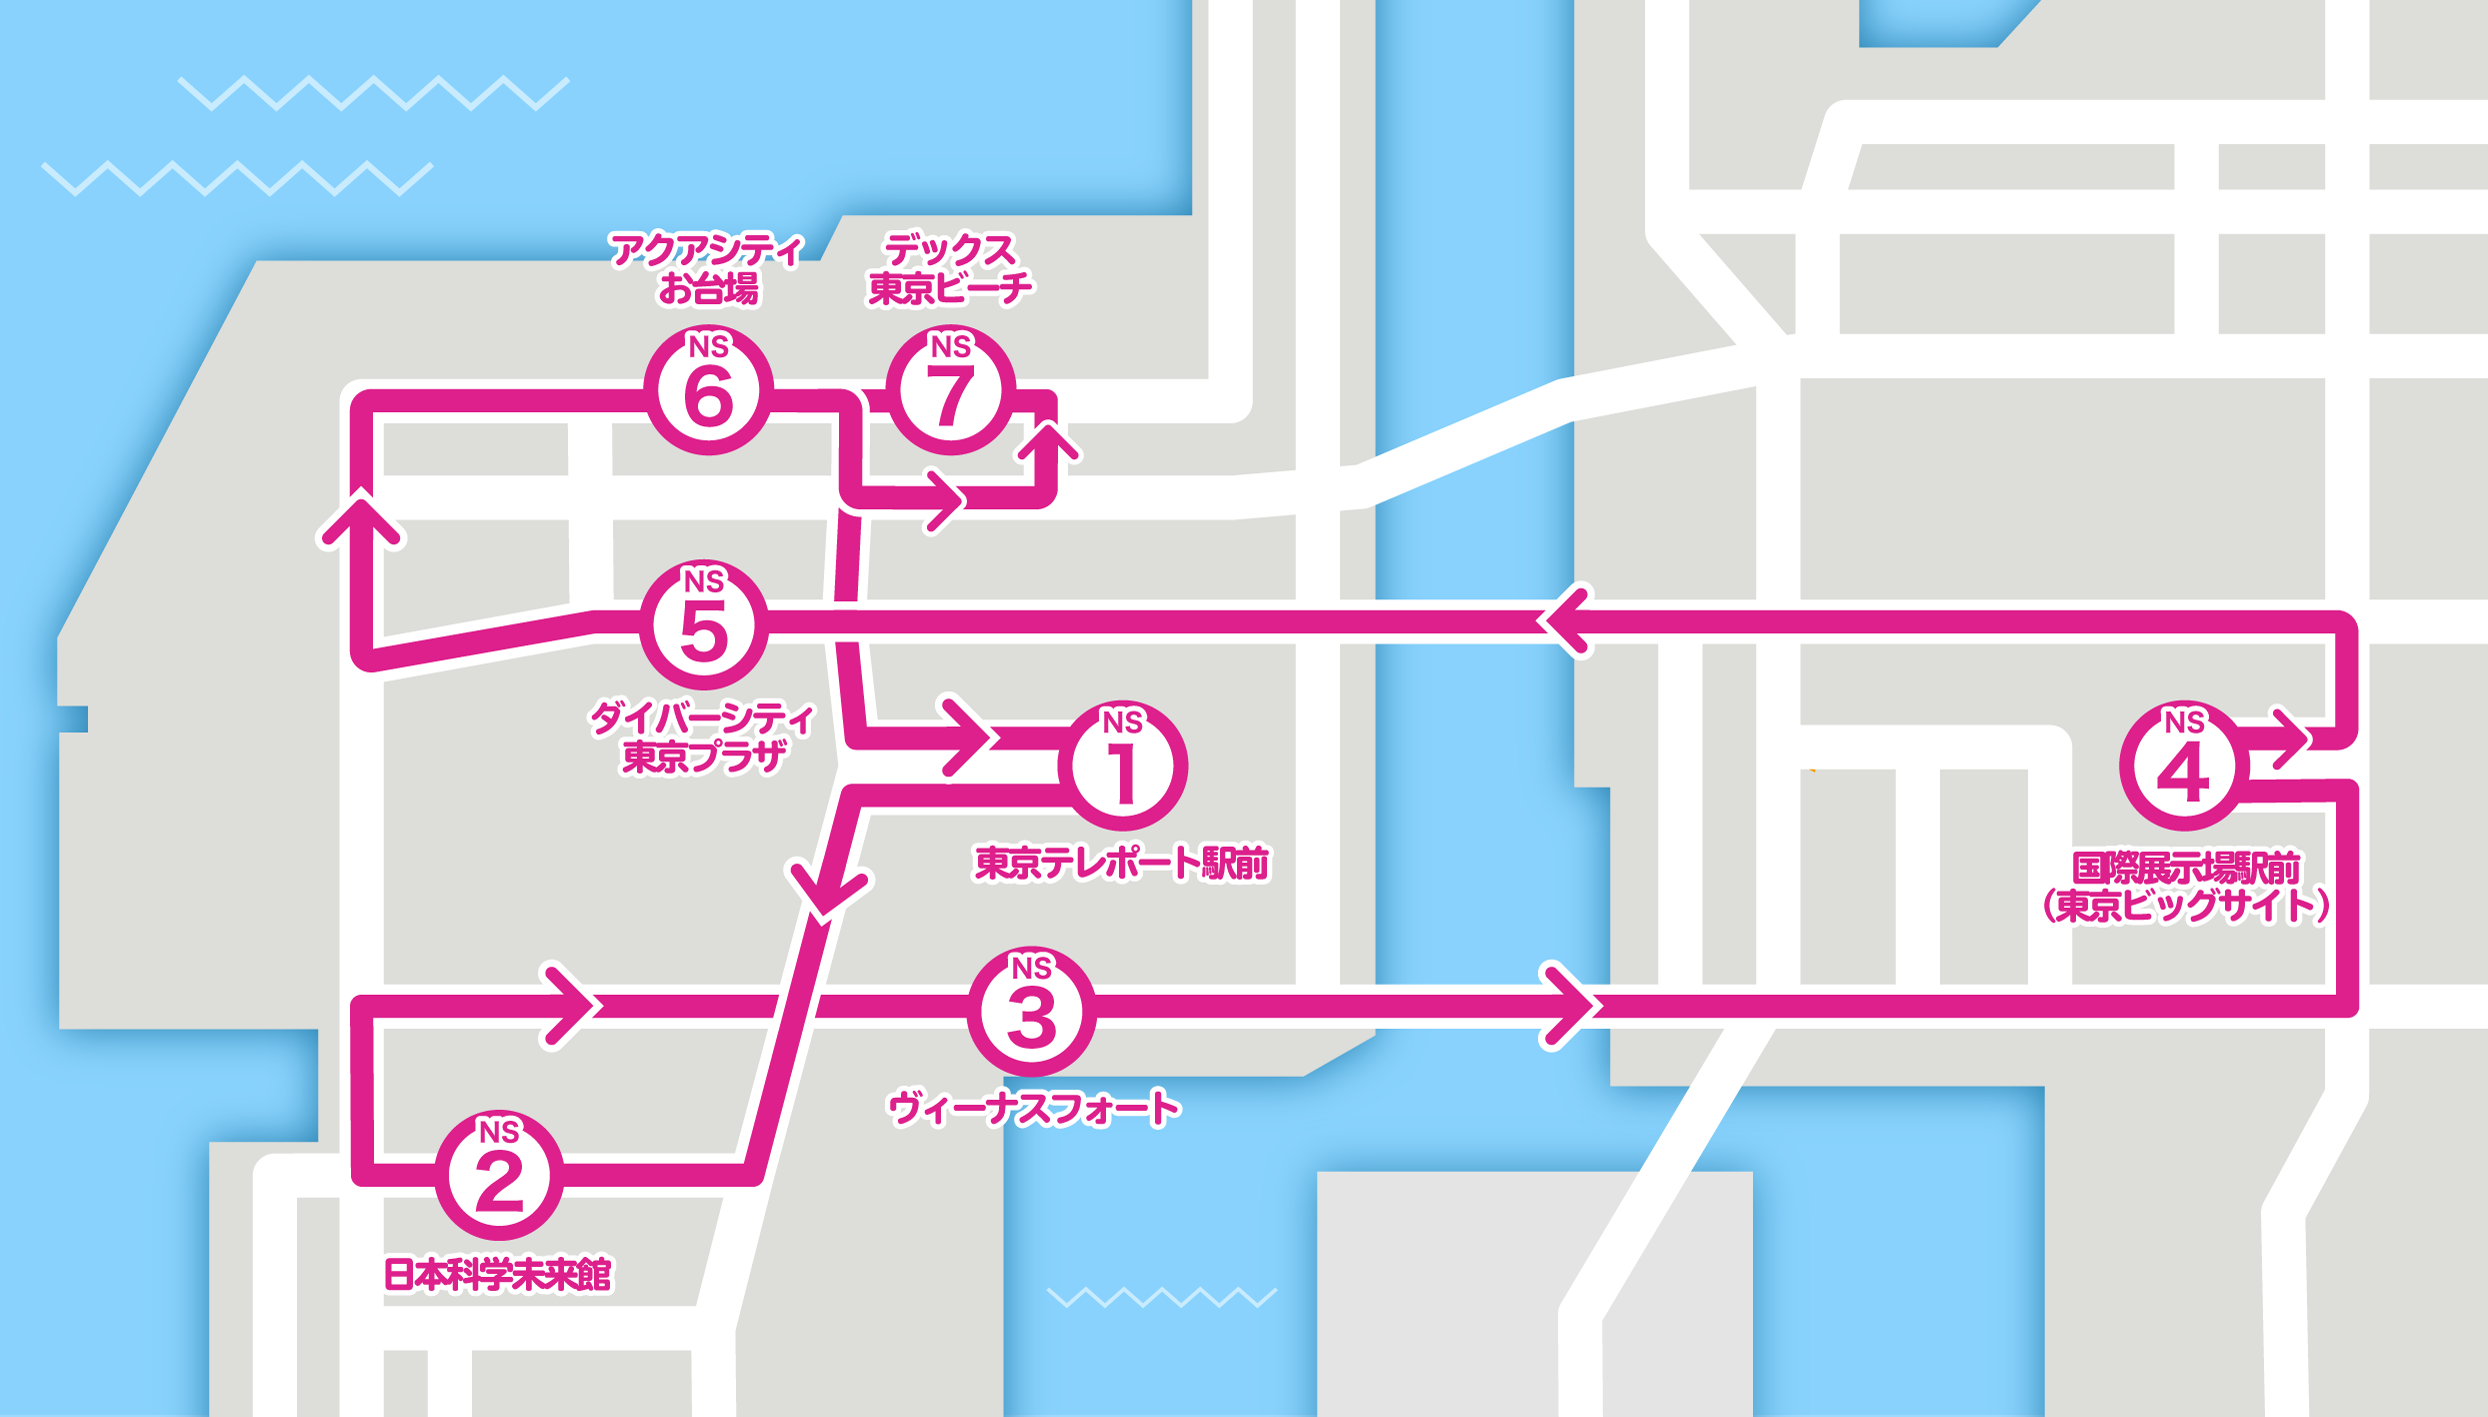 東京臨海副都心エリアへの誘客および周遊促進のためのアニメツーリズム「TOKIMEKI♪ODAIBA BUS～With You～」実証運行を実施のサブ画像4